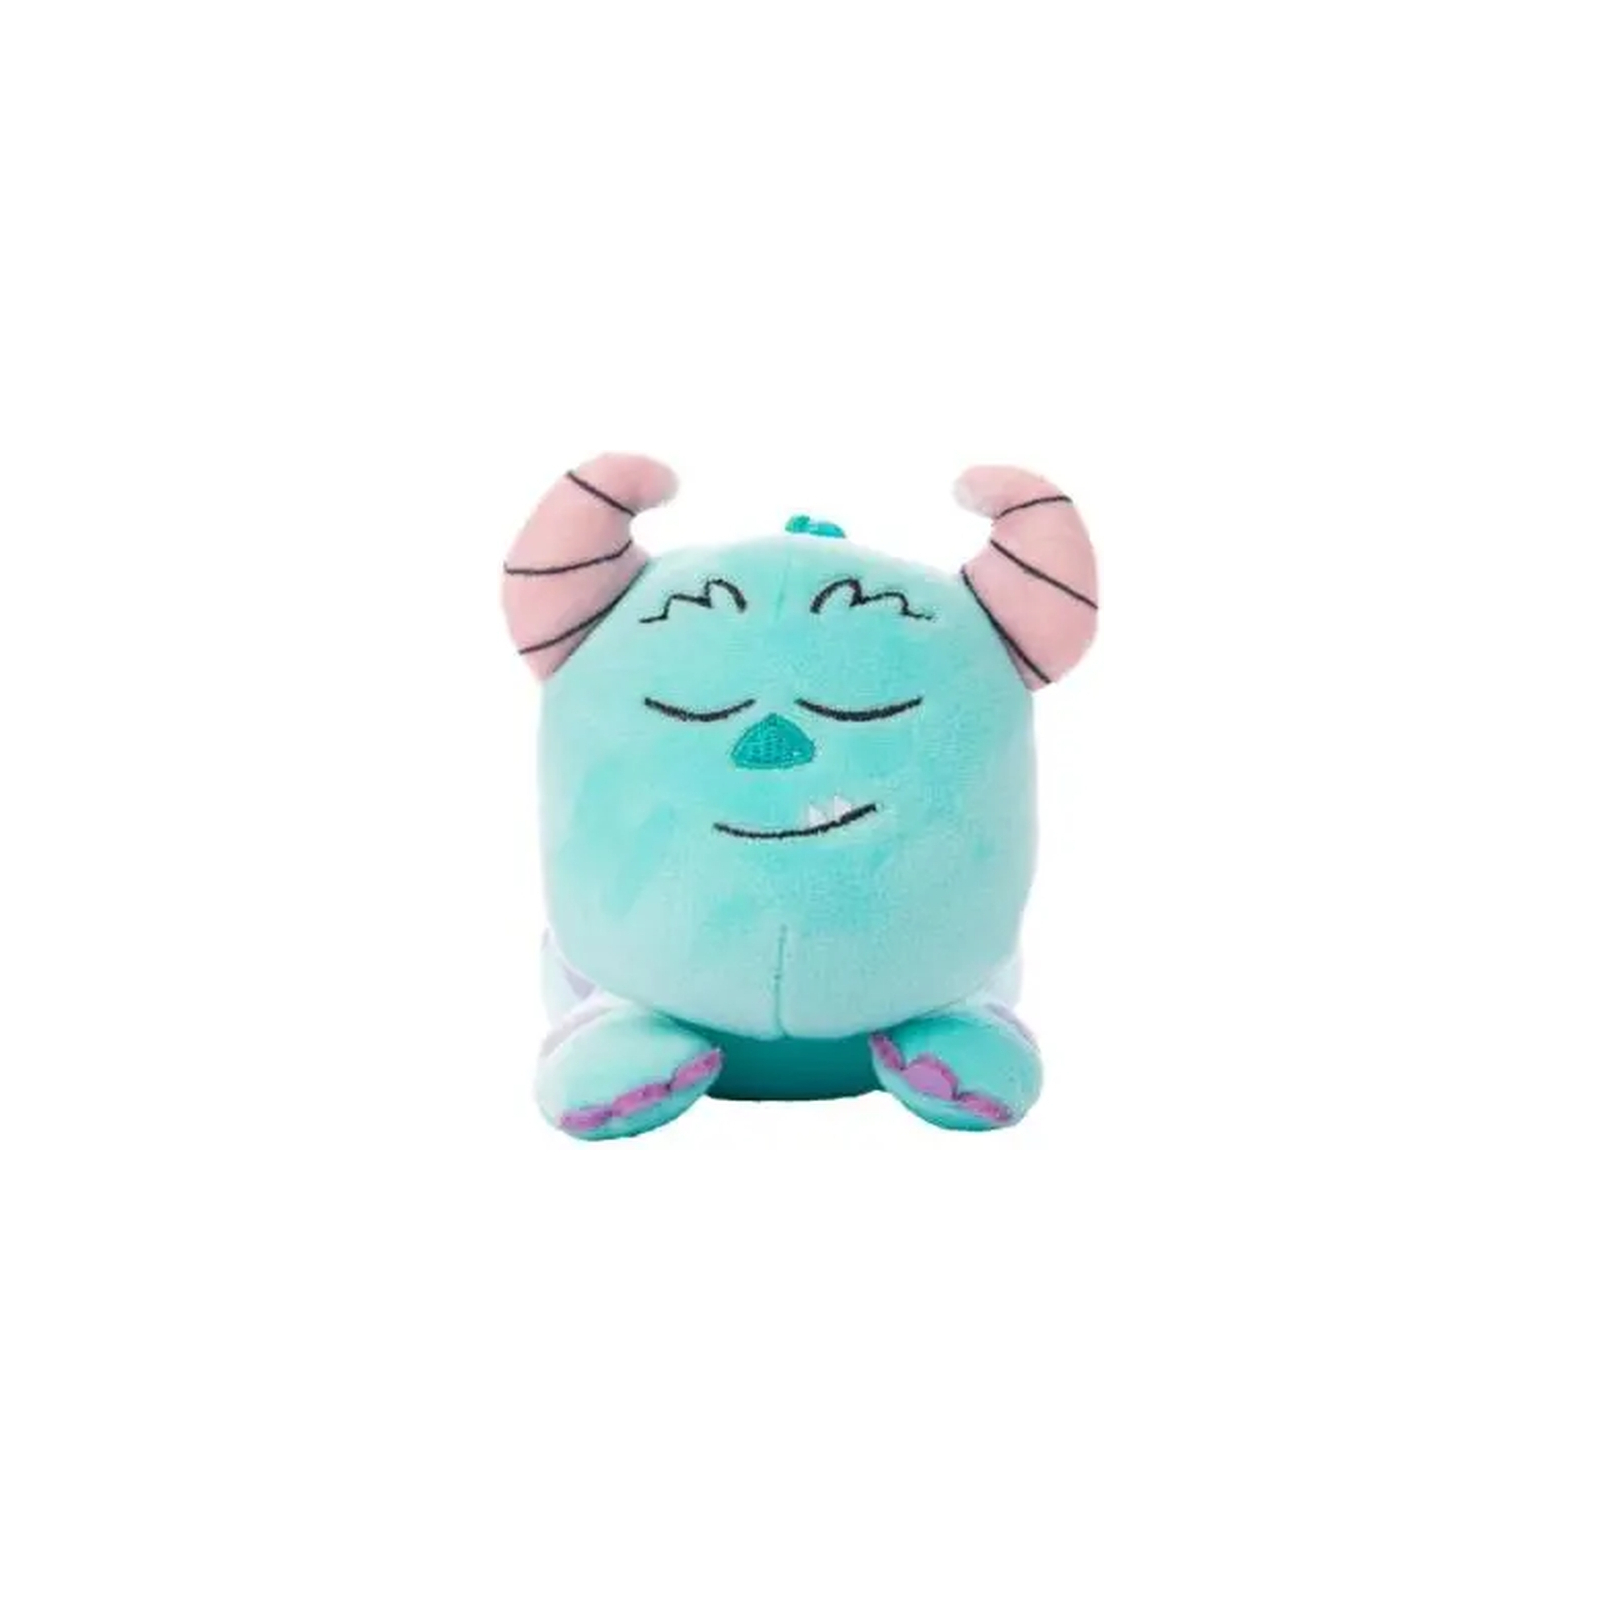 Мягкая игрушка Sambro Disney Collectible мягконабивная Snuglets монстр Салли с клипсой 13 см (DSG-9429-4) изображение 2